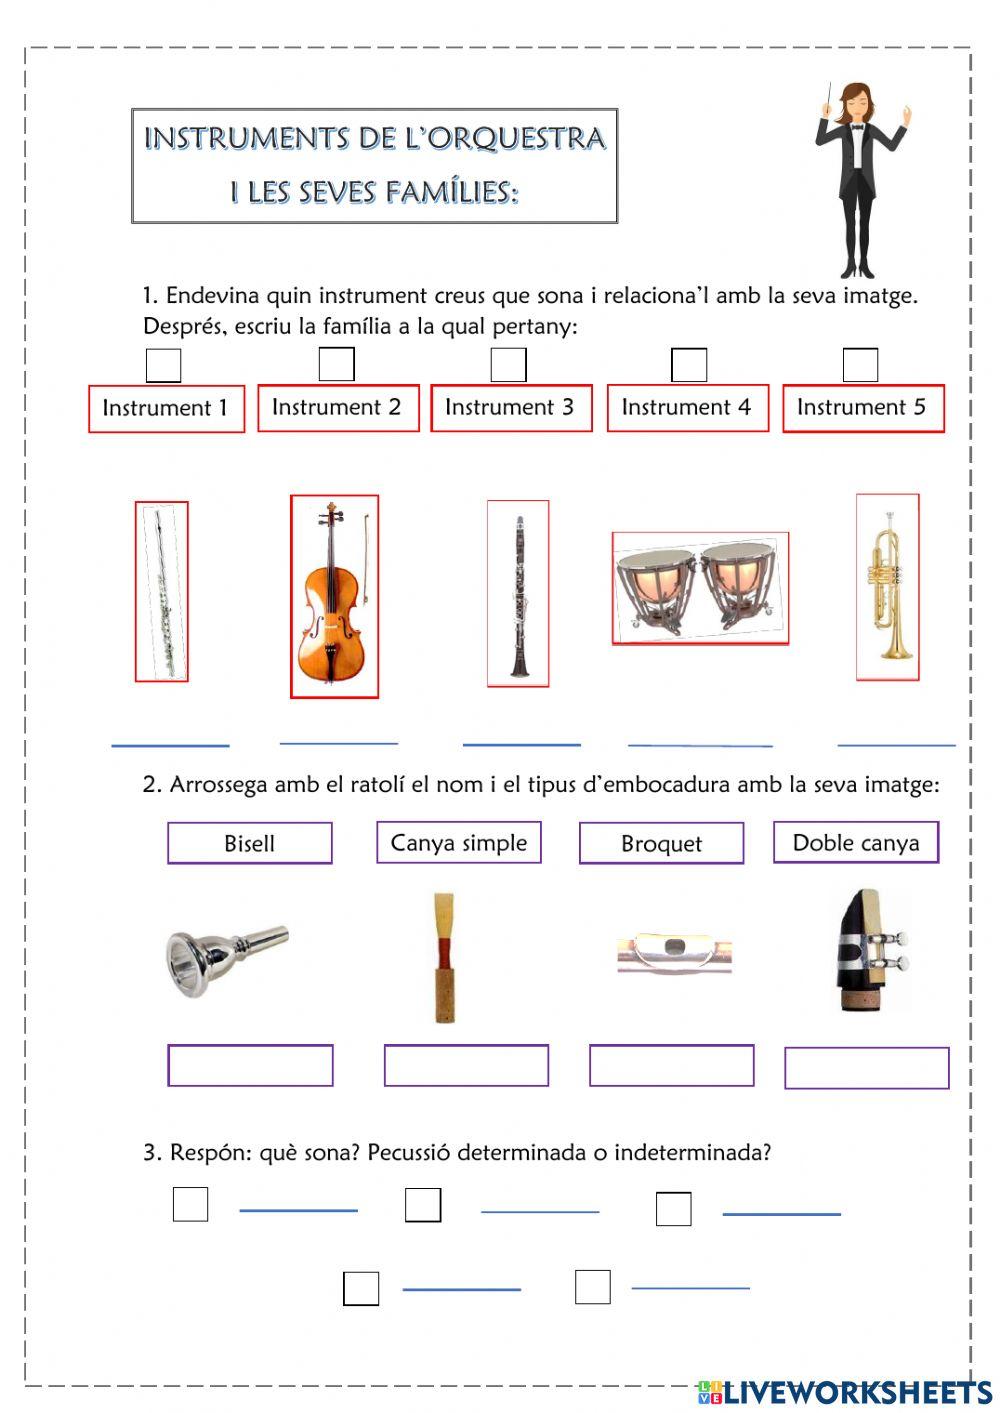 Instruments musicals, reconeixement i característiques